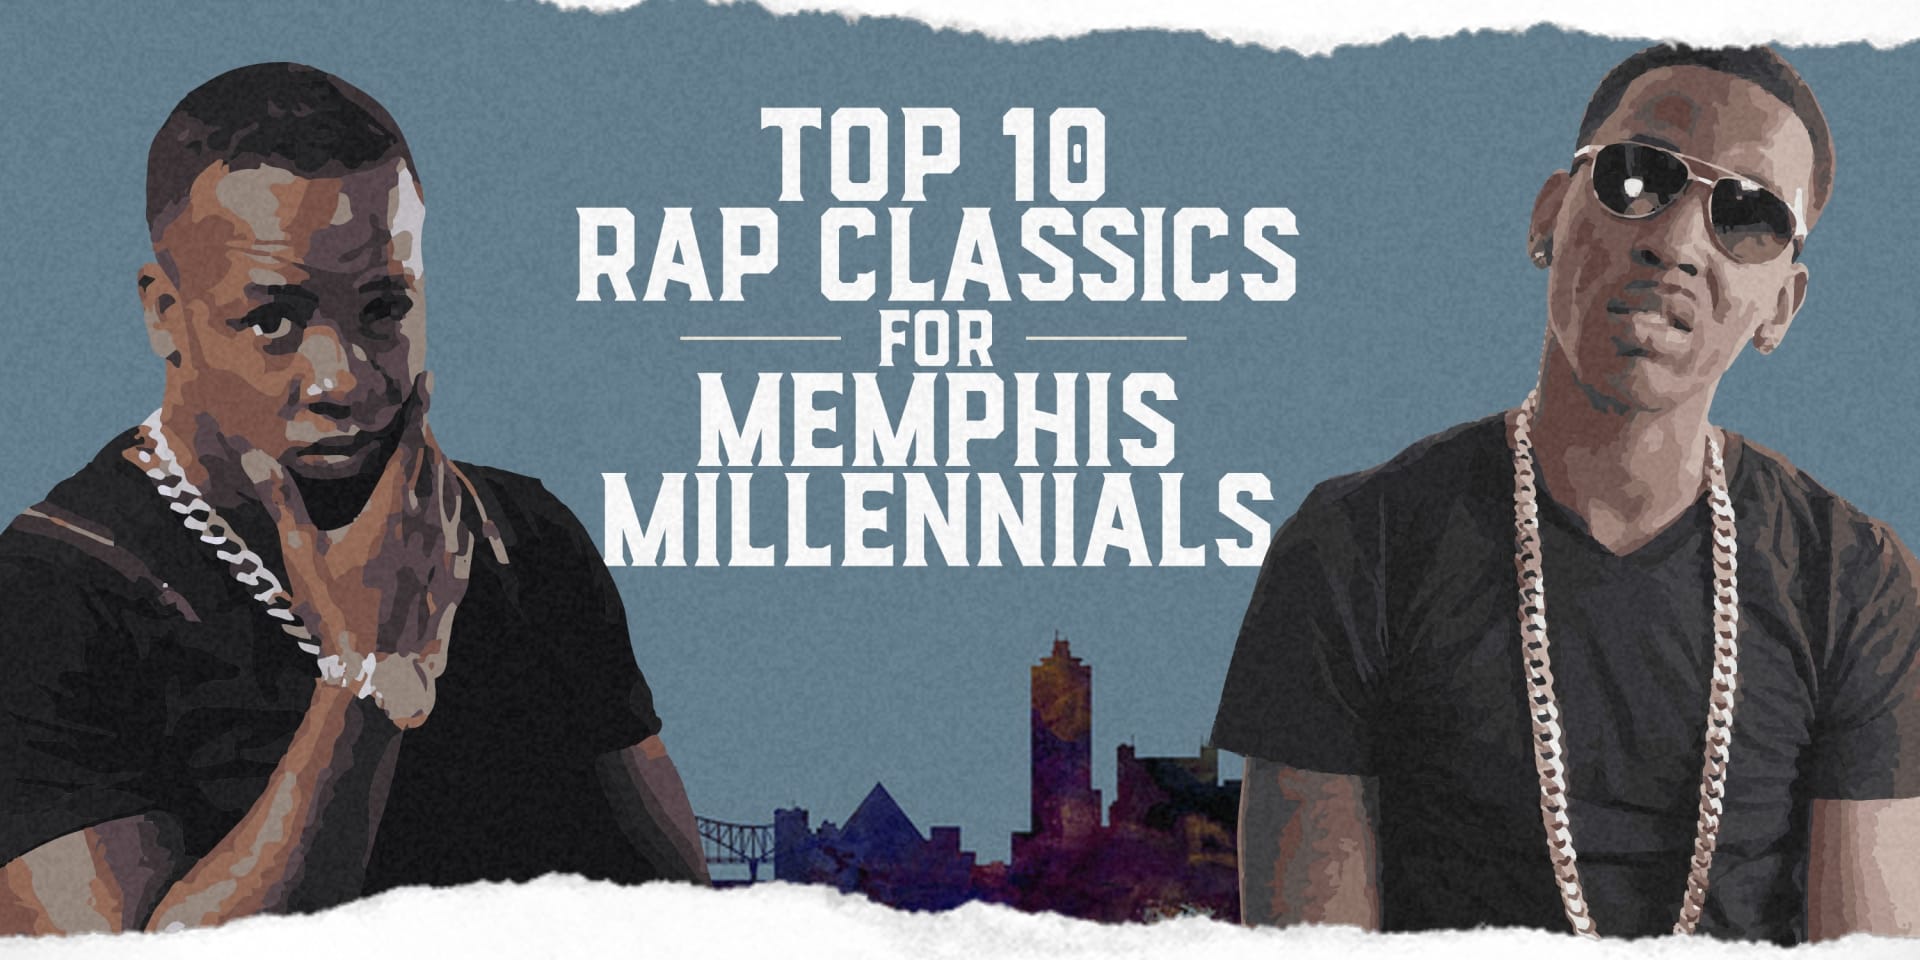 Top 10 Rap Classics for Memphis Millennials